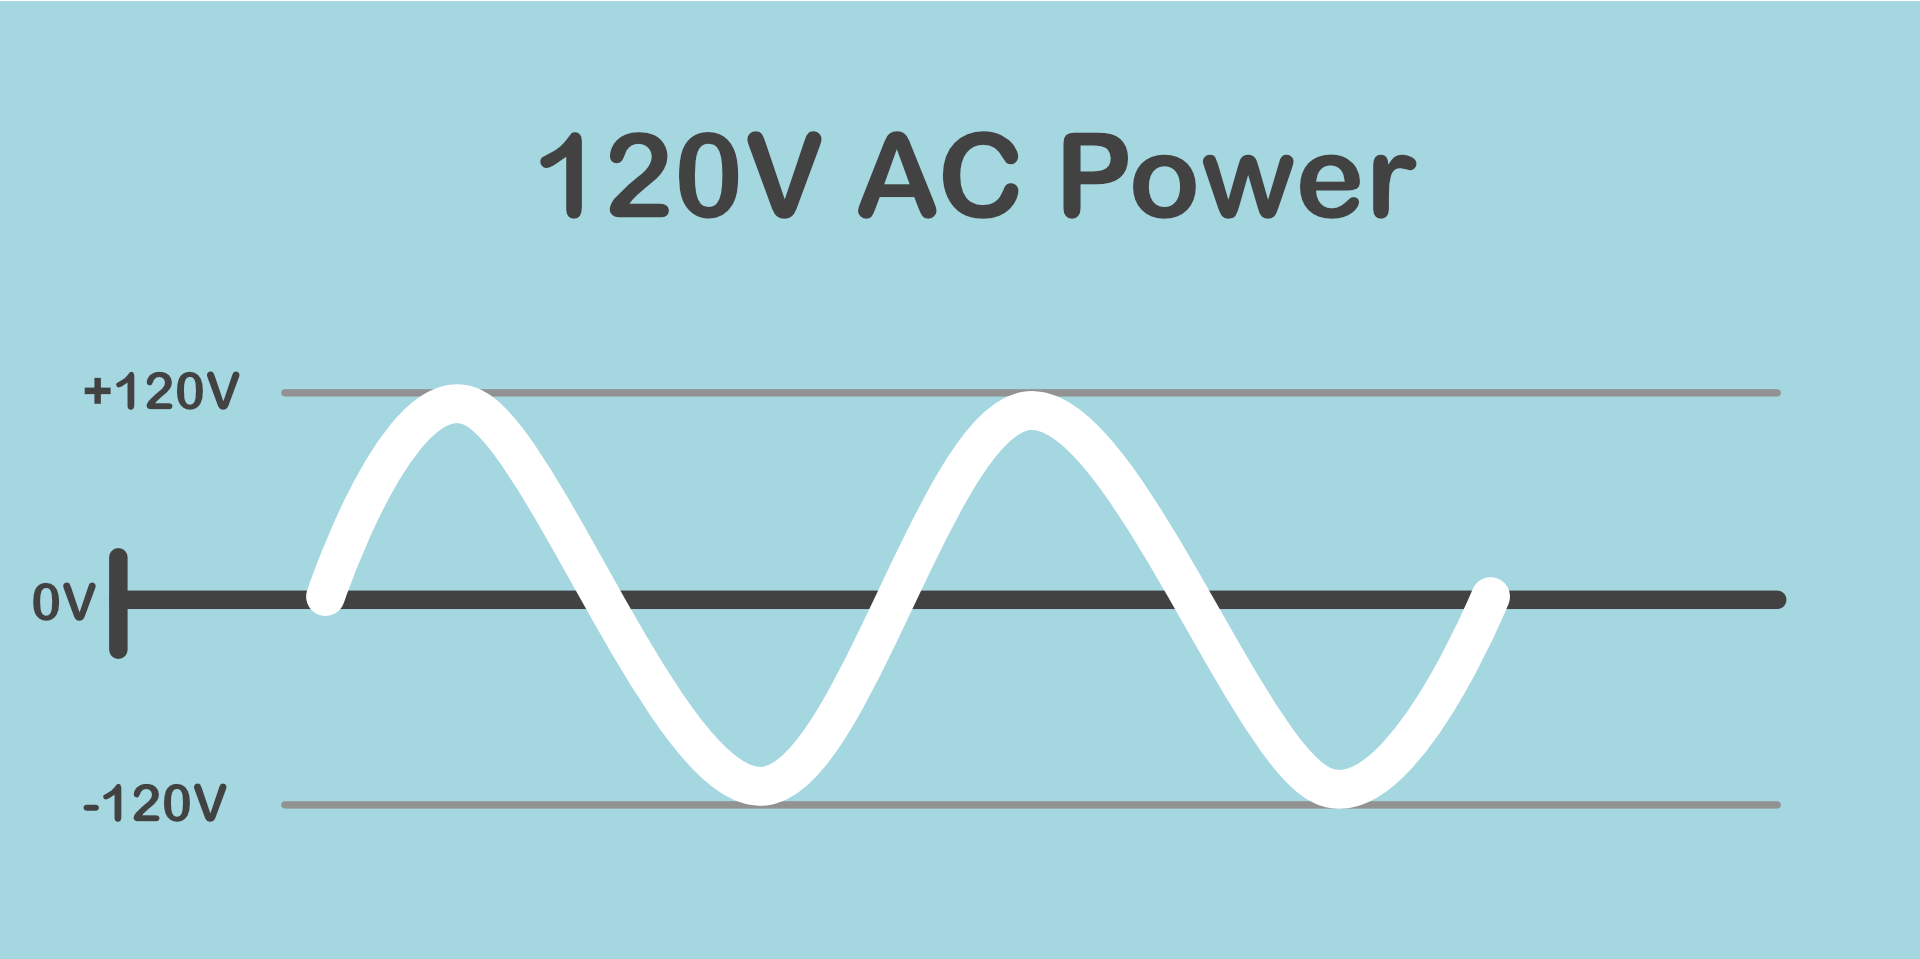 Graph of 120V alternating current